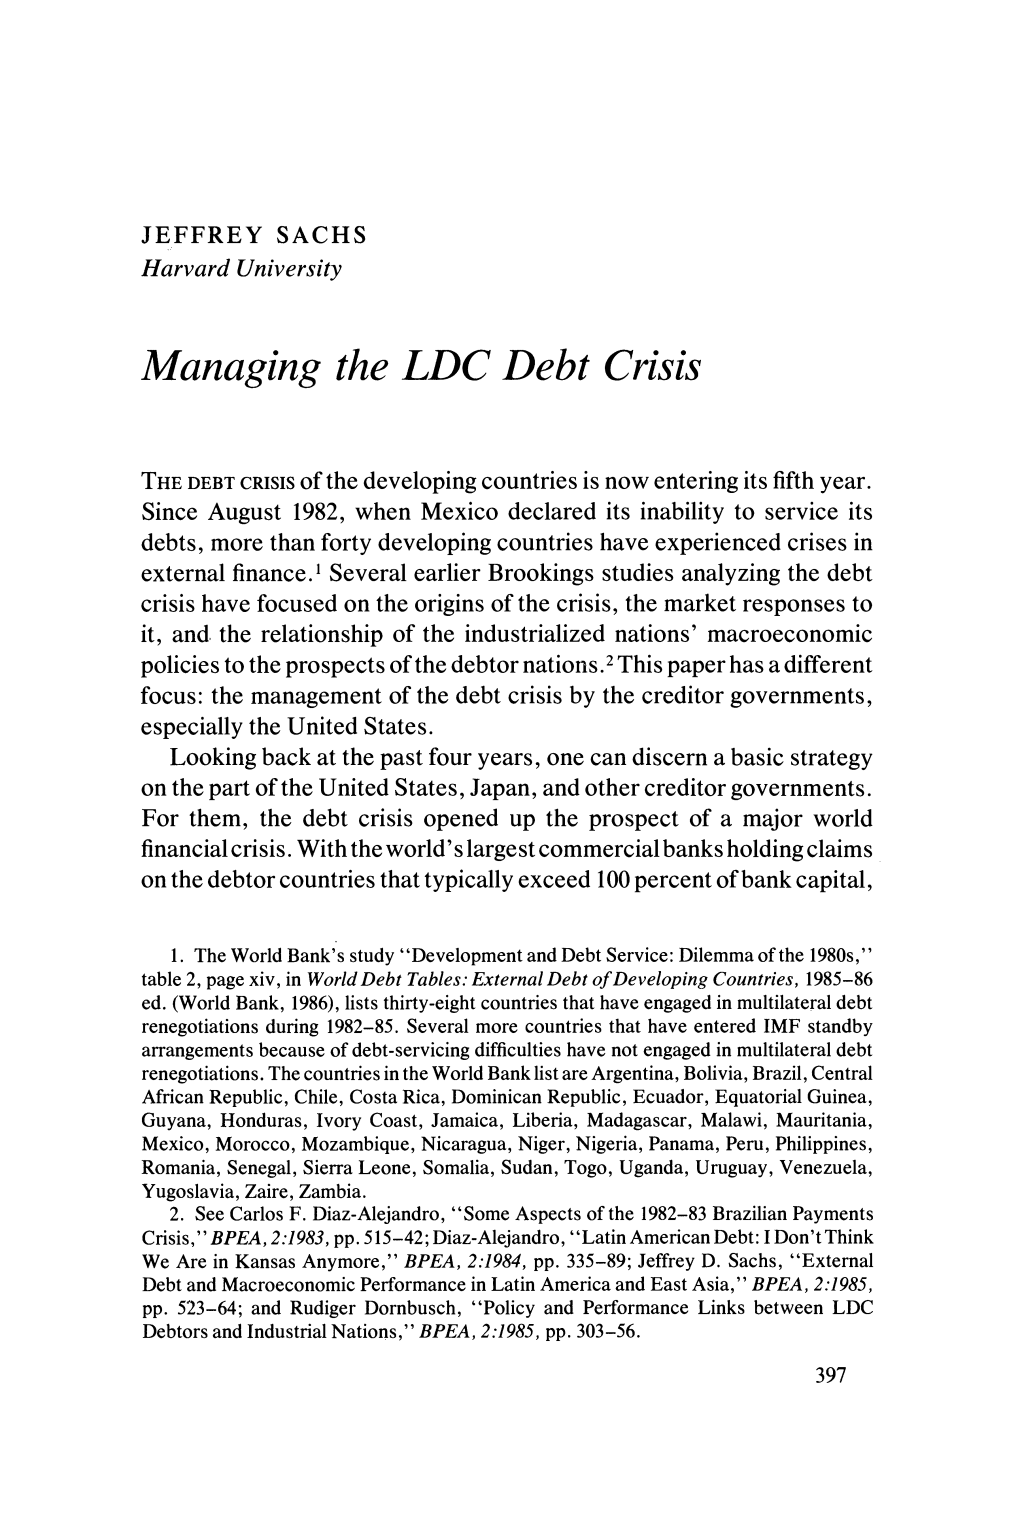 Managing the LDC Debt Crisis